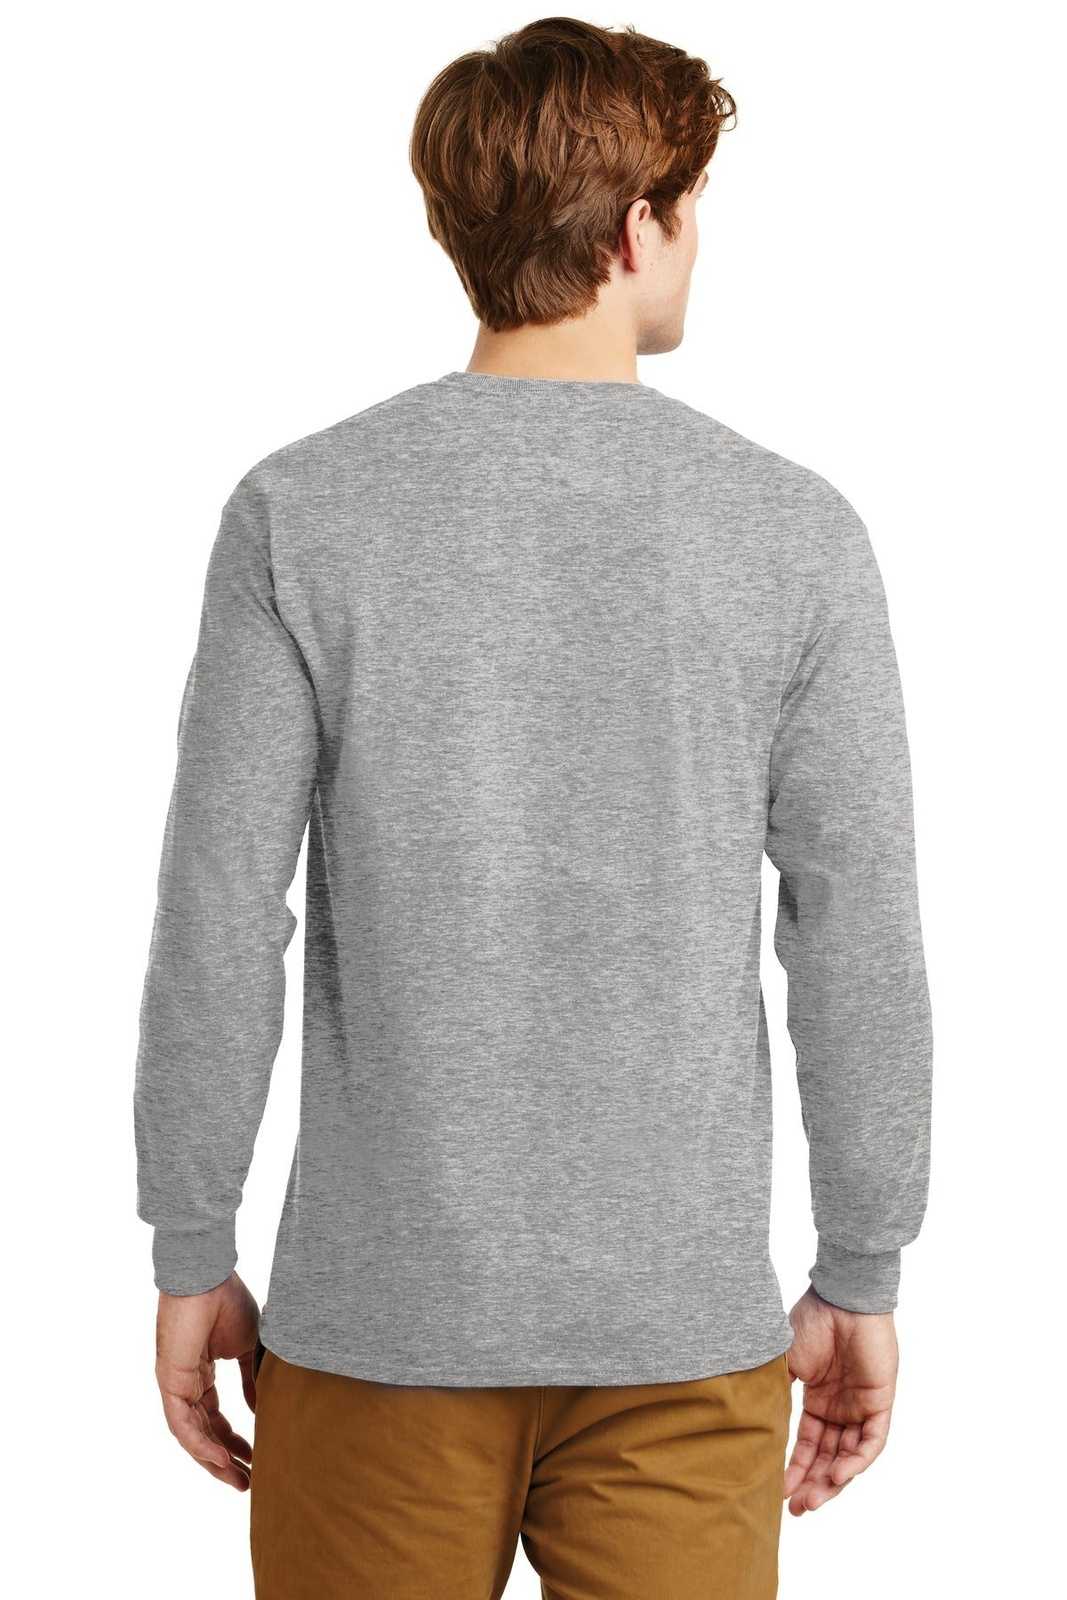 Gildan G2400 Ultra Cotton 100% Cotton Long Sleeve T-Shirt - Sport Gray - HIT a Double